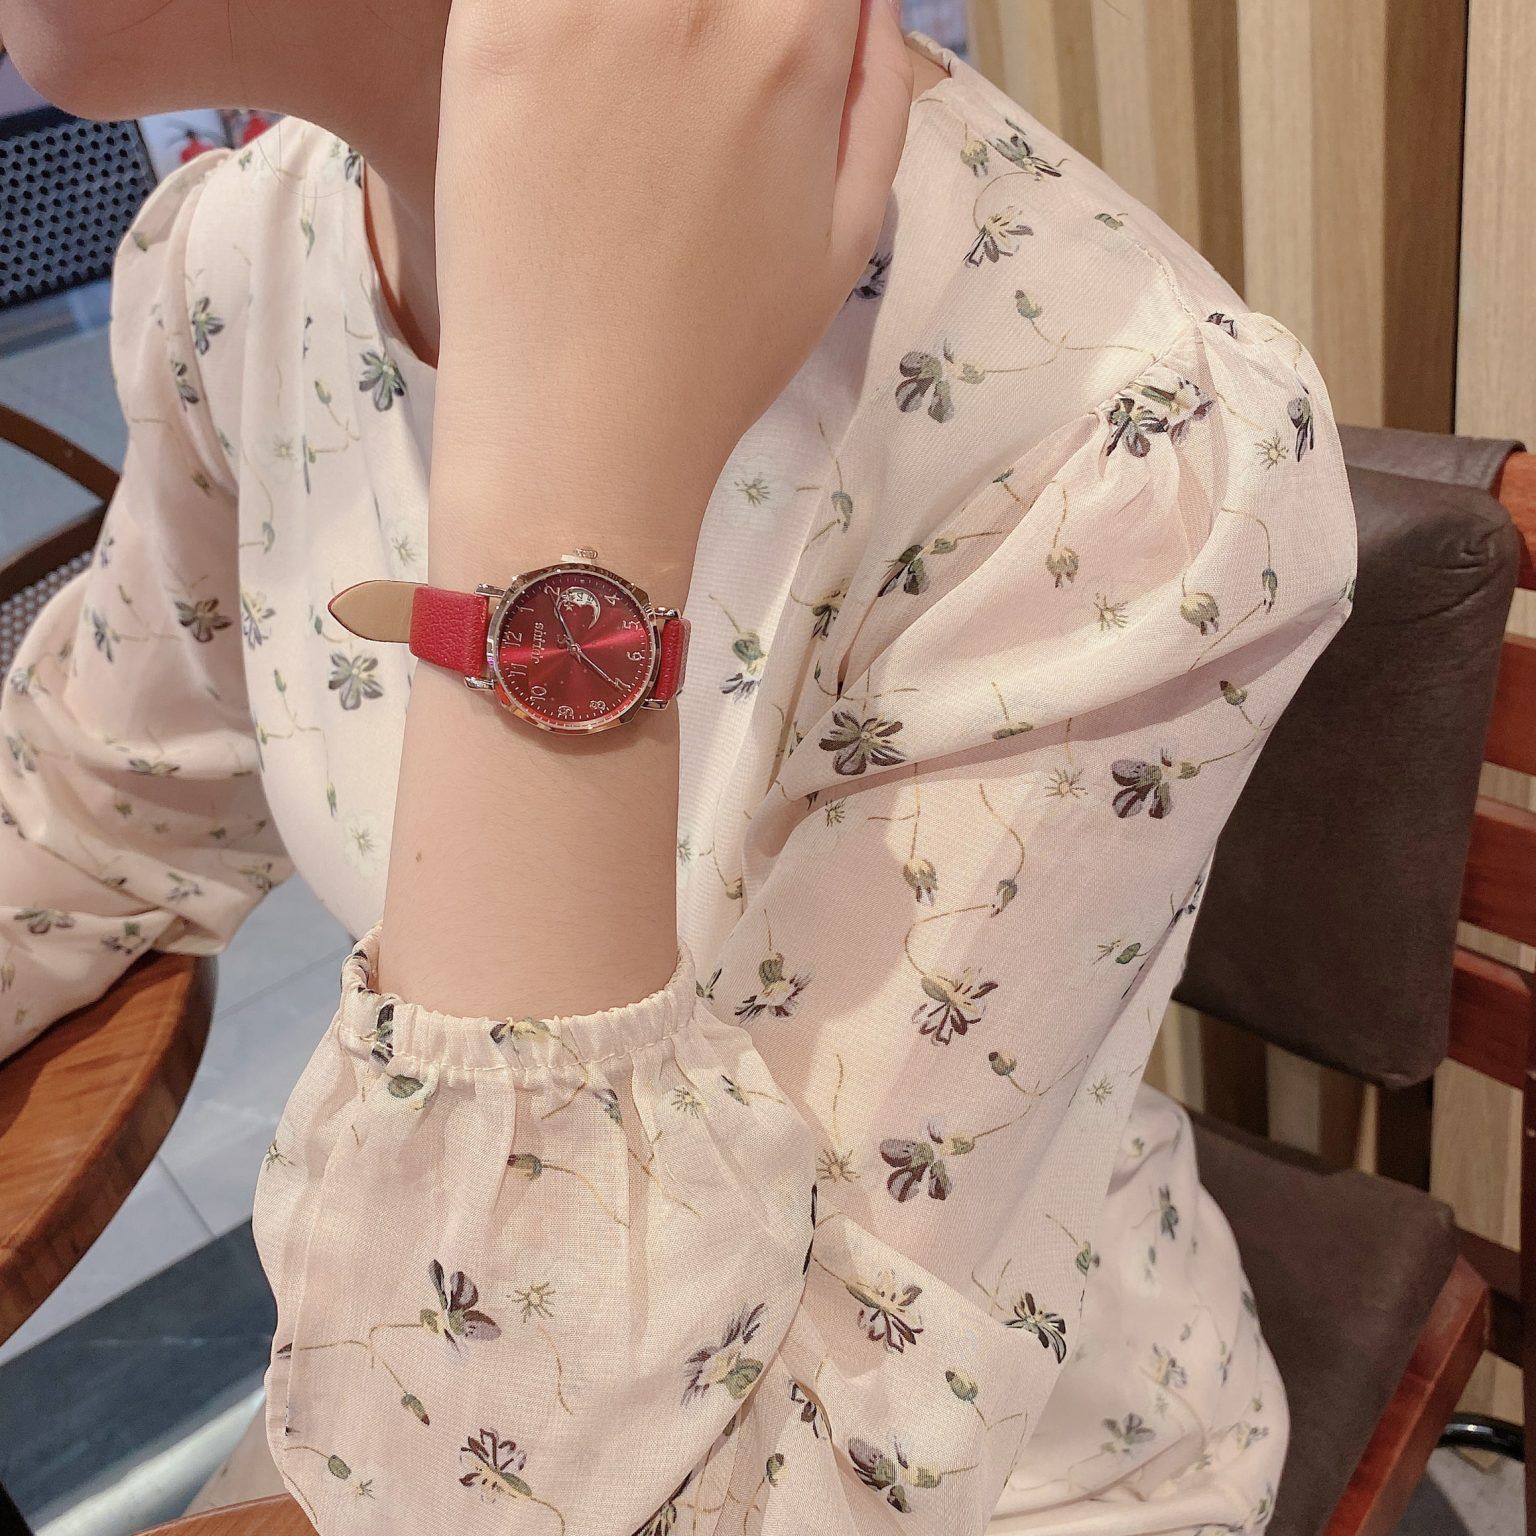  Đồng hồ đeo tay Julius nữ JA-1211 dây da đỏ - Size 30 